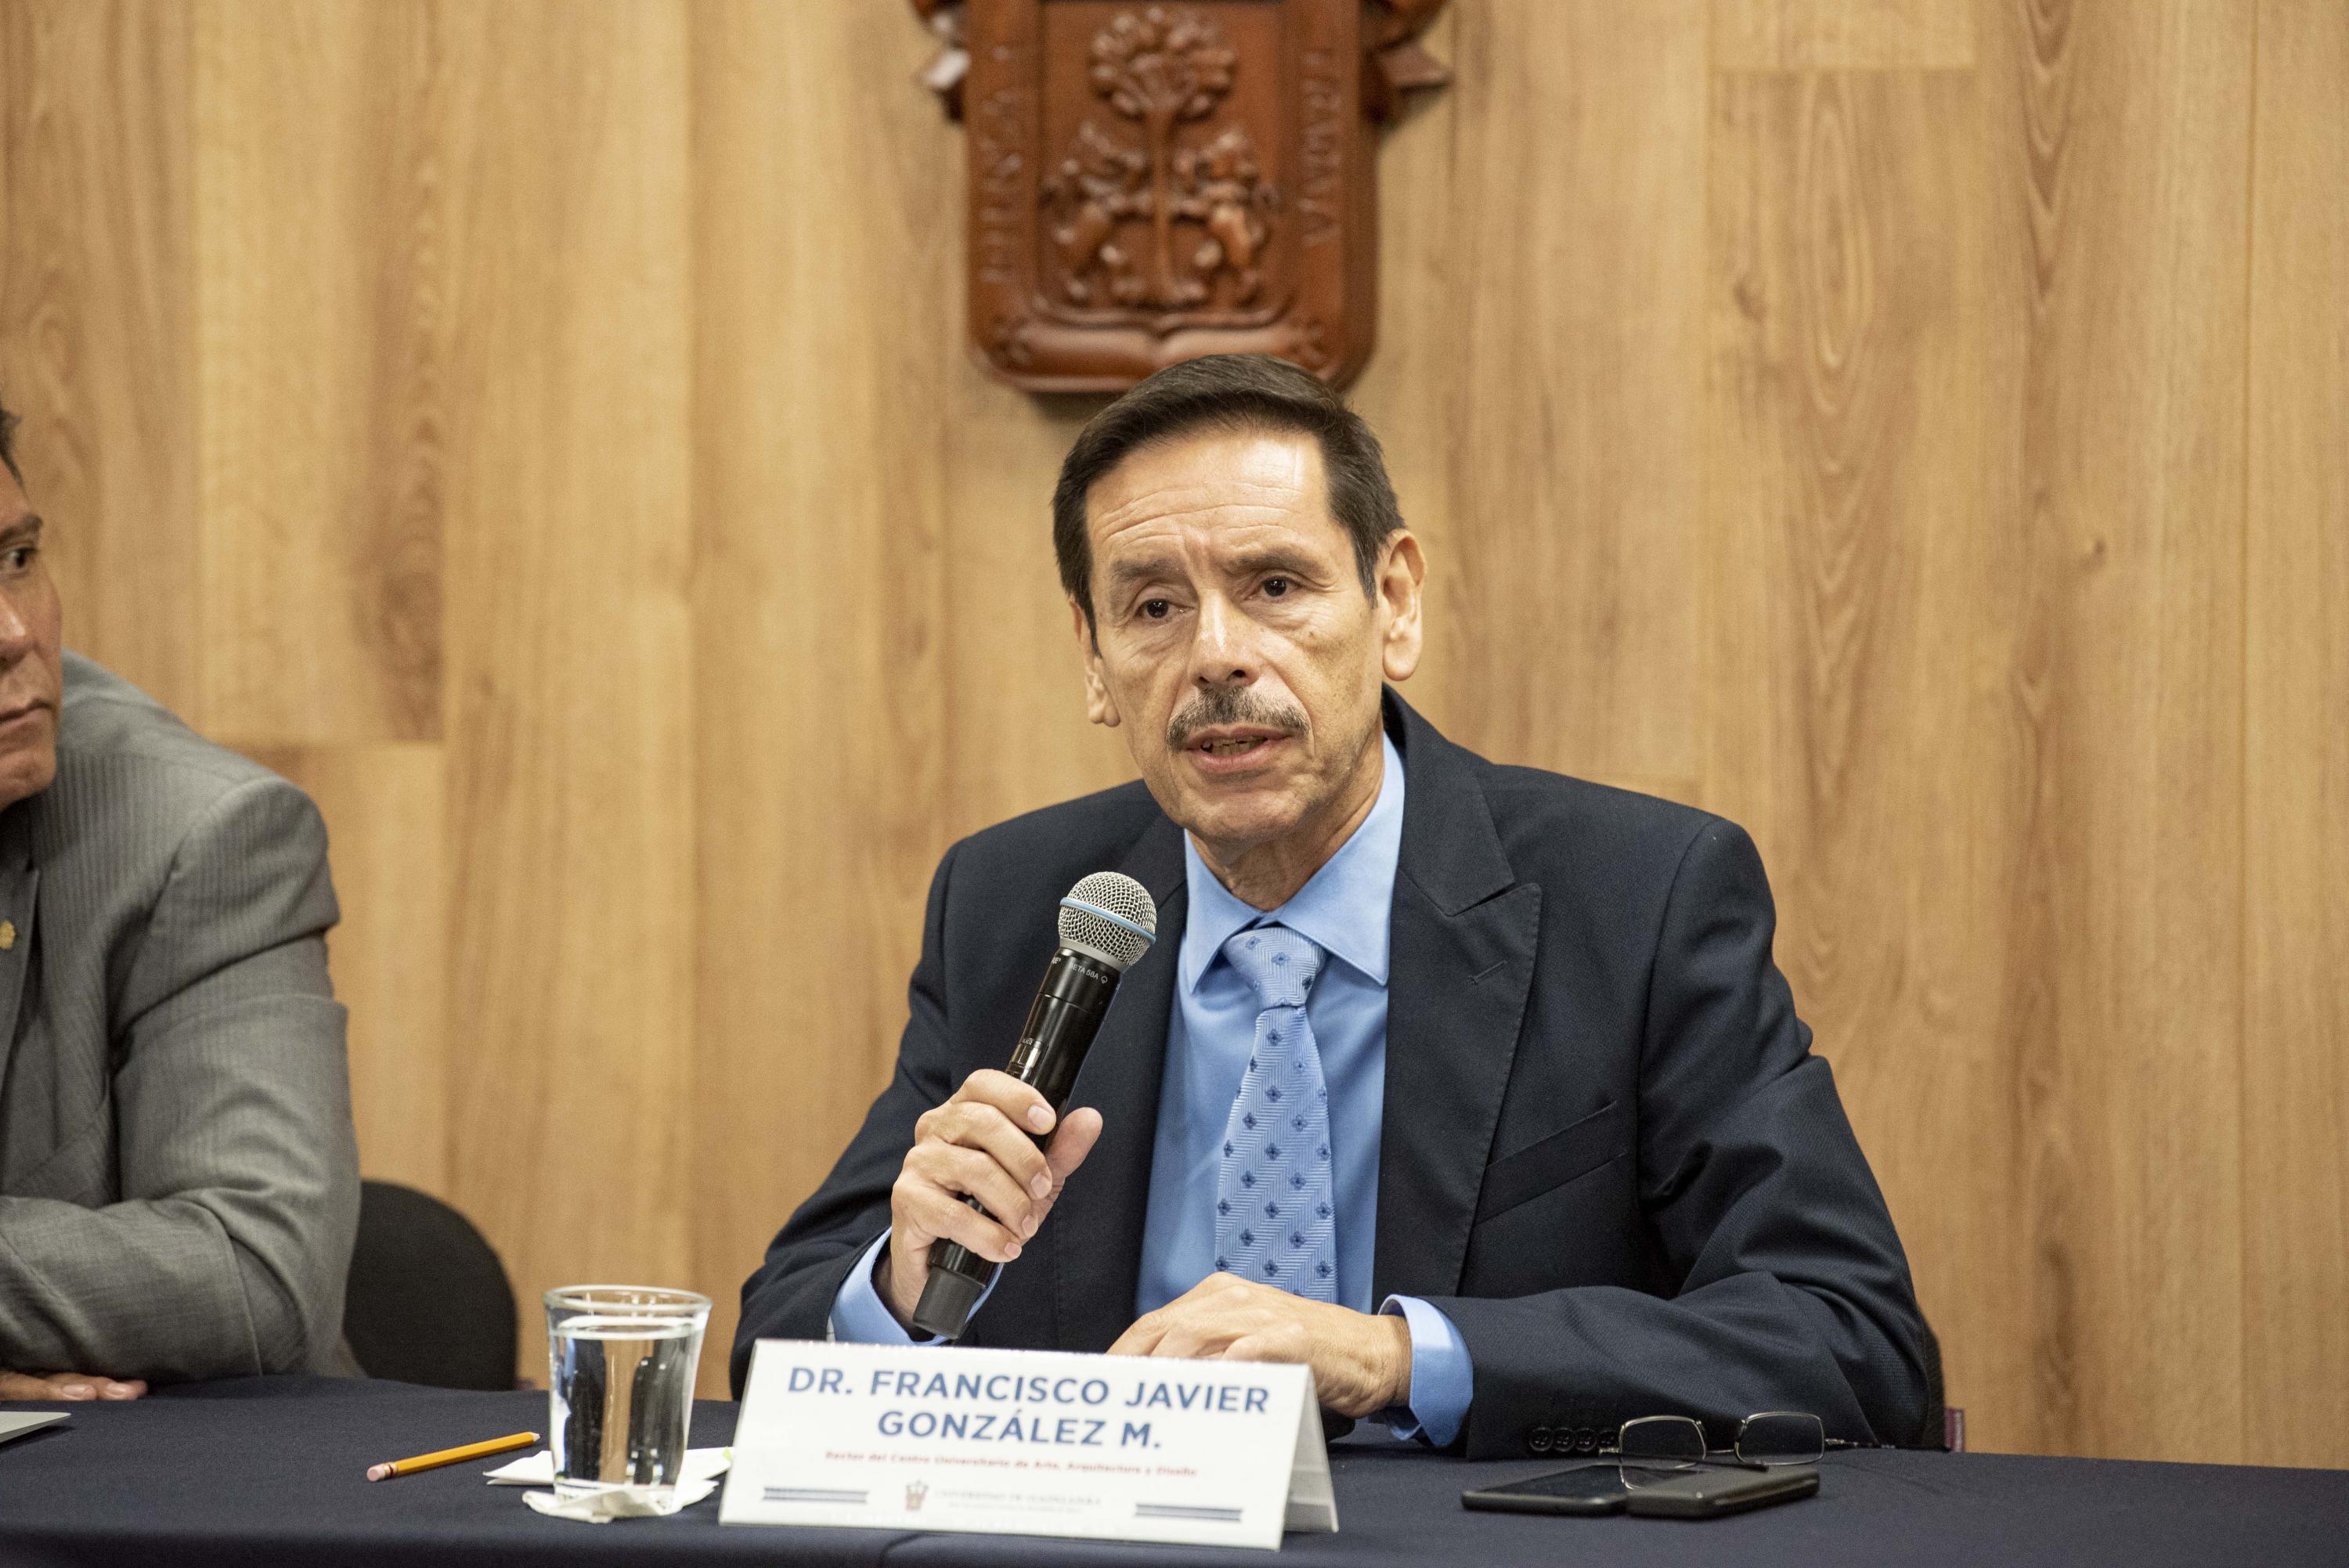 El Rector del Centro Universitario de Arte, Arquitectura y Diseño (CUAAD), doctor Francisco Javier González Madariaga, en uso de la palabra